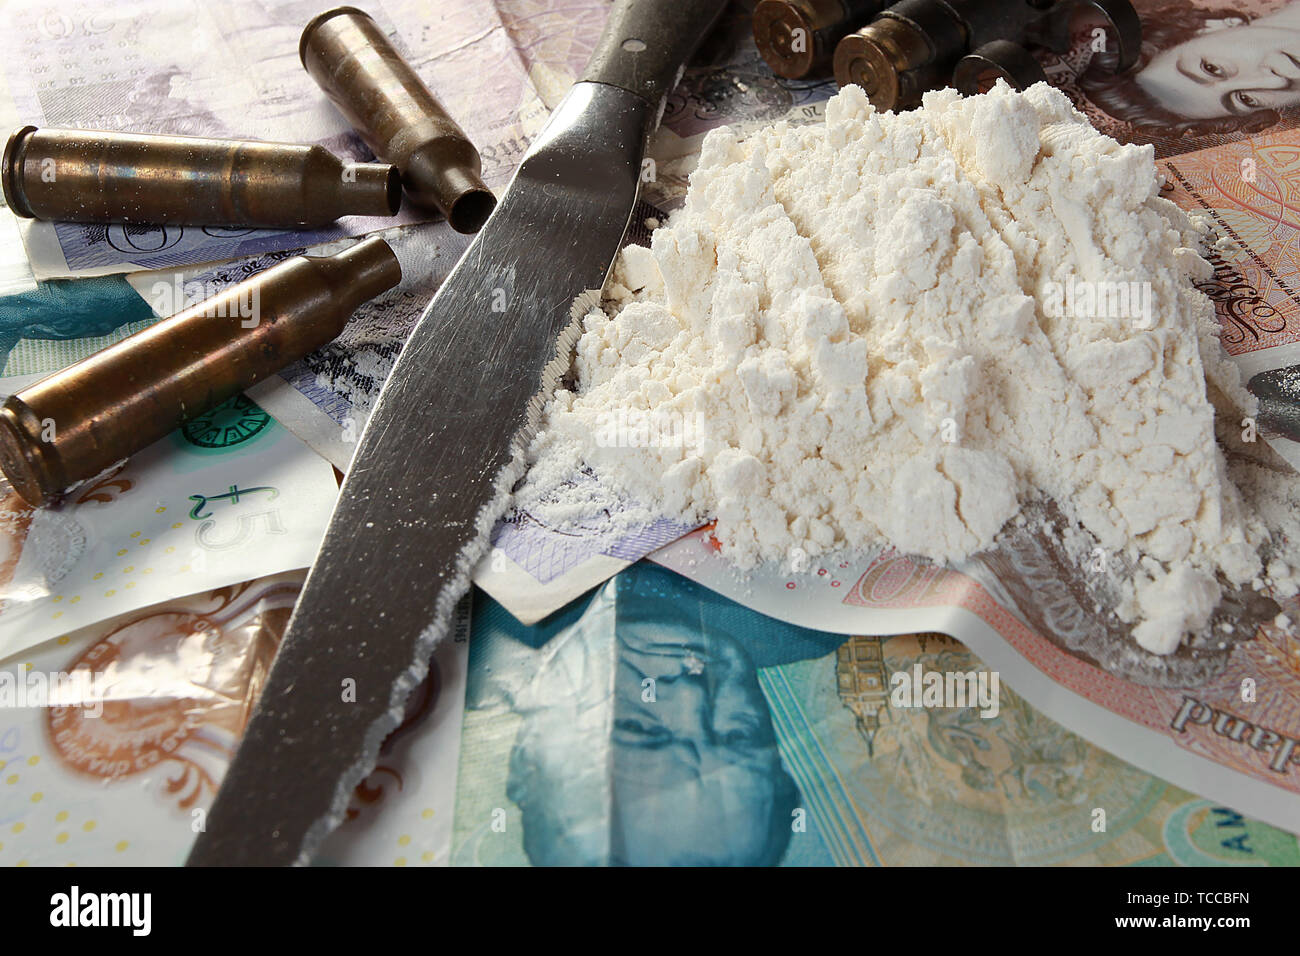 La criminalità organizzata, il traffico di droga e la criminalità violenta Foto Stock